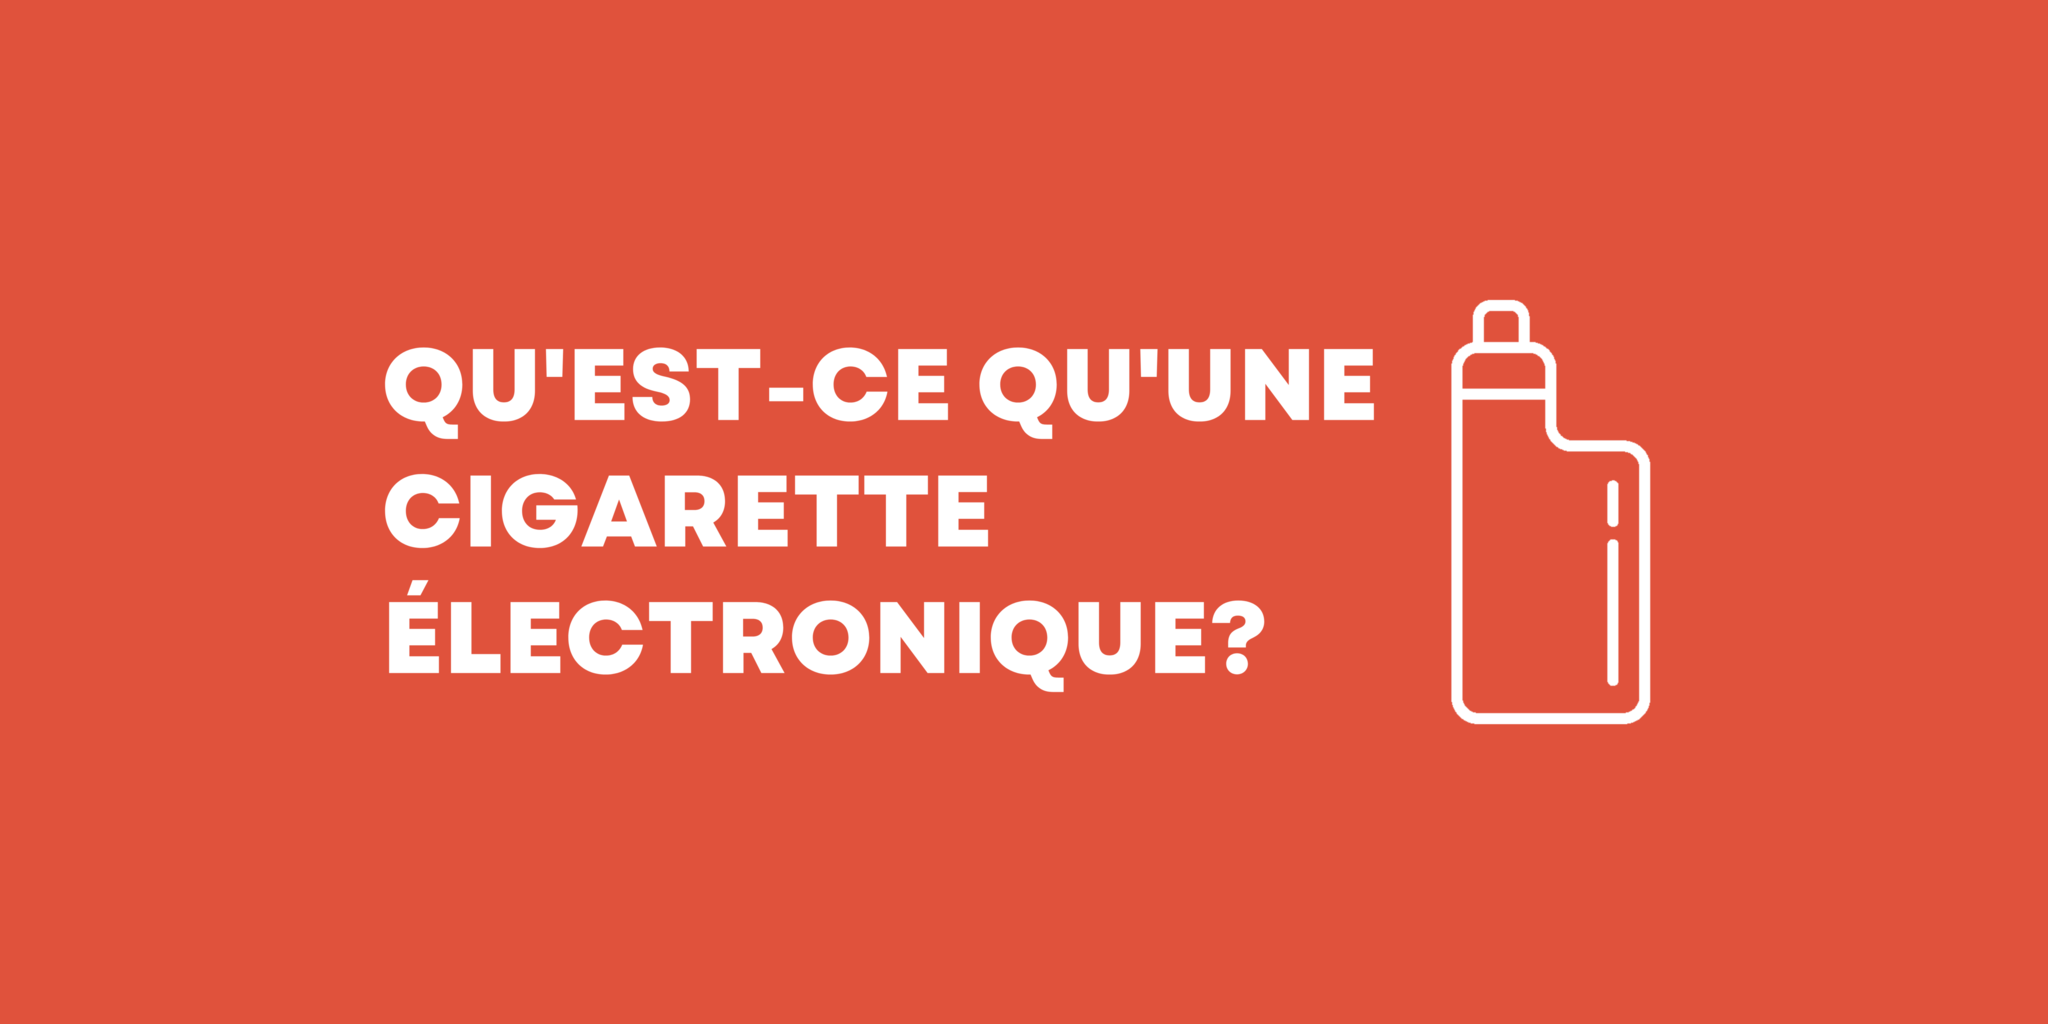 Qu'est-ce qu'une cigarette électronique?